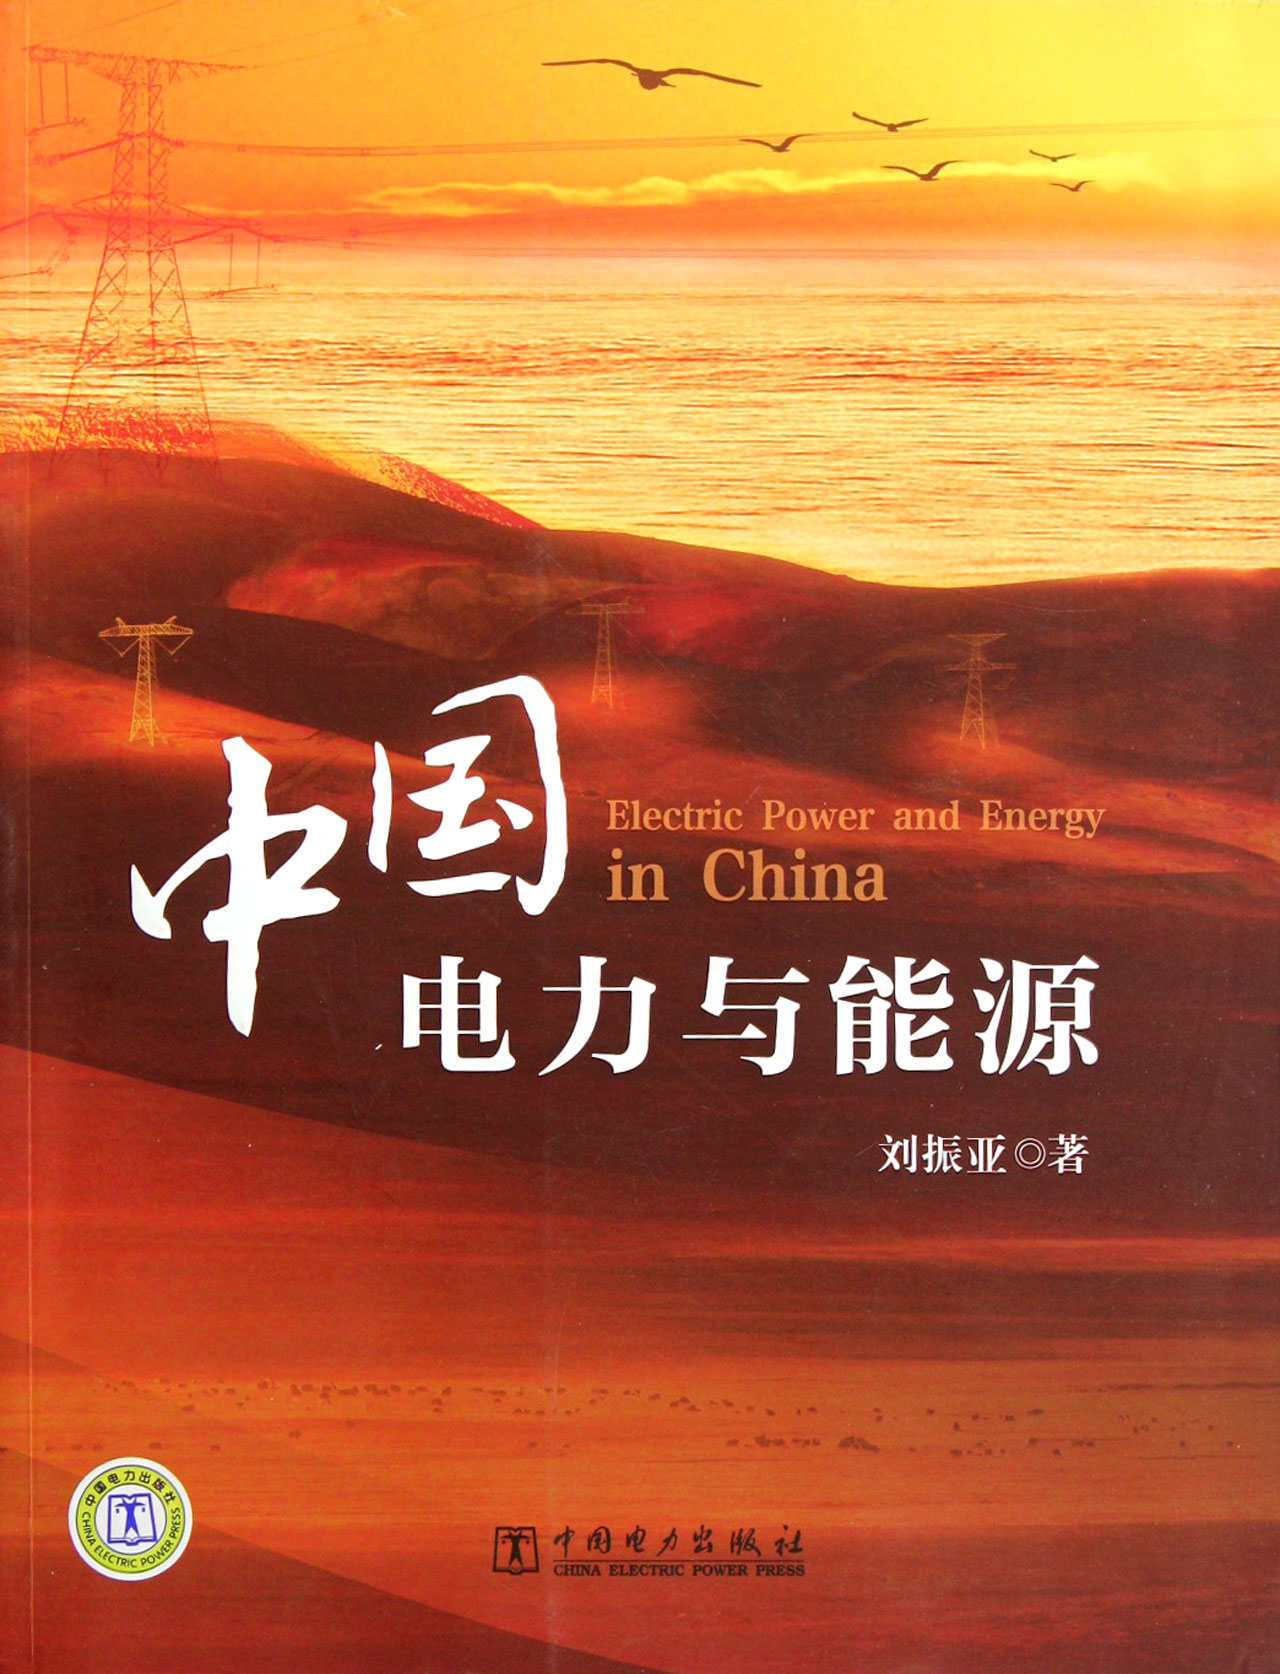 中国电力与能源 工业技术 书籍 word格式下载